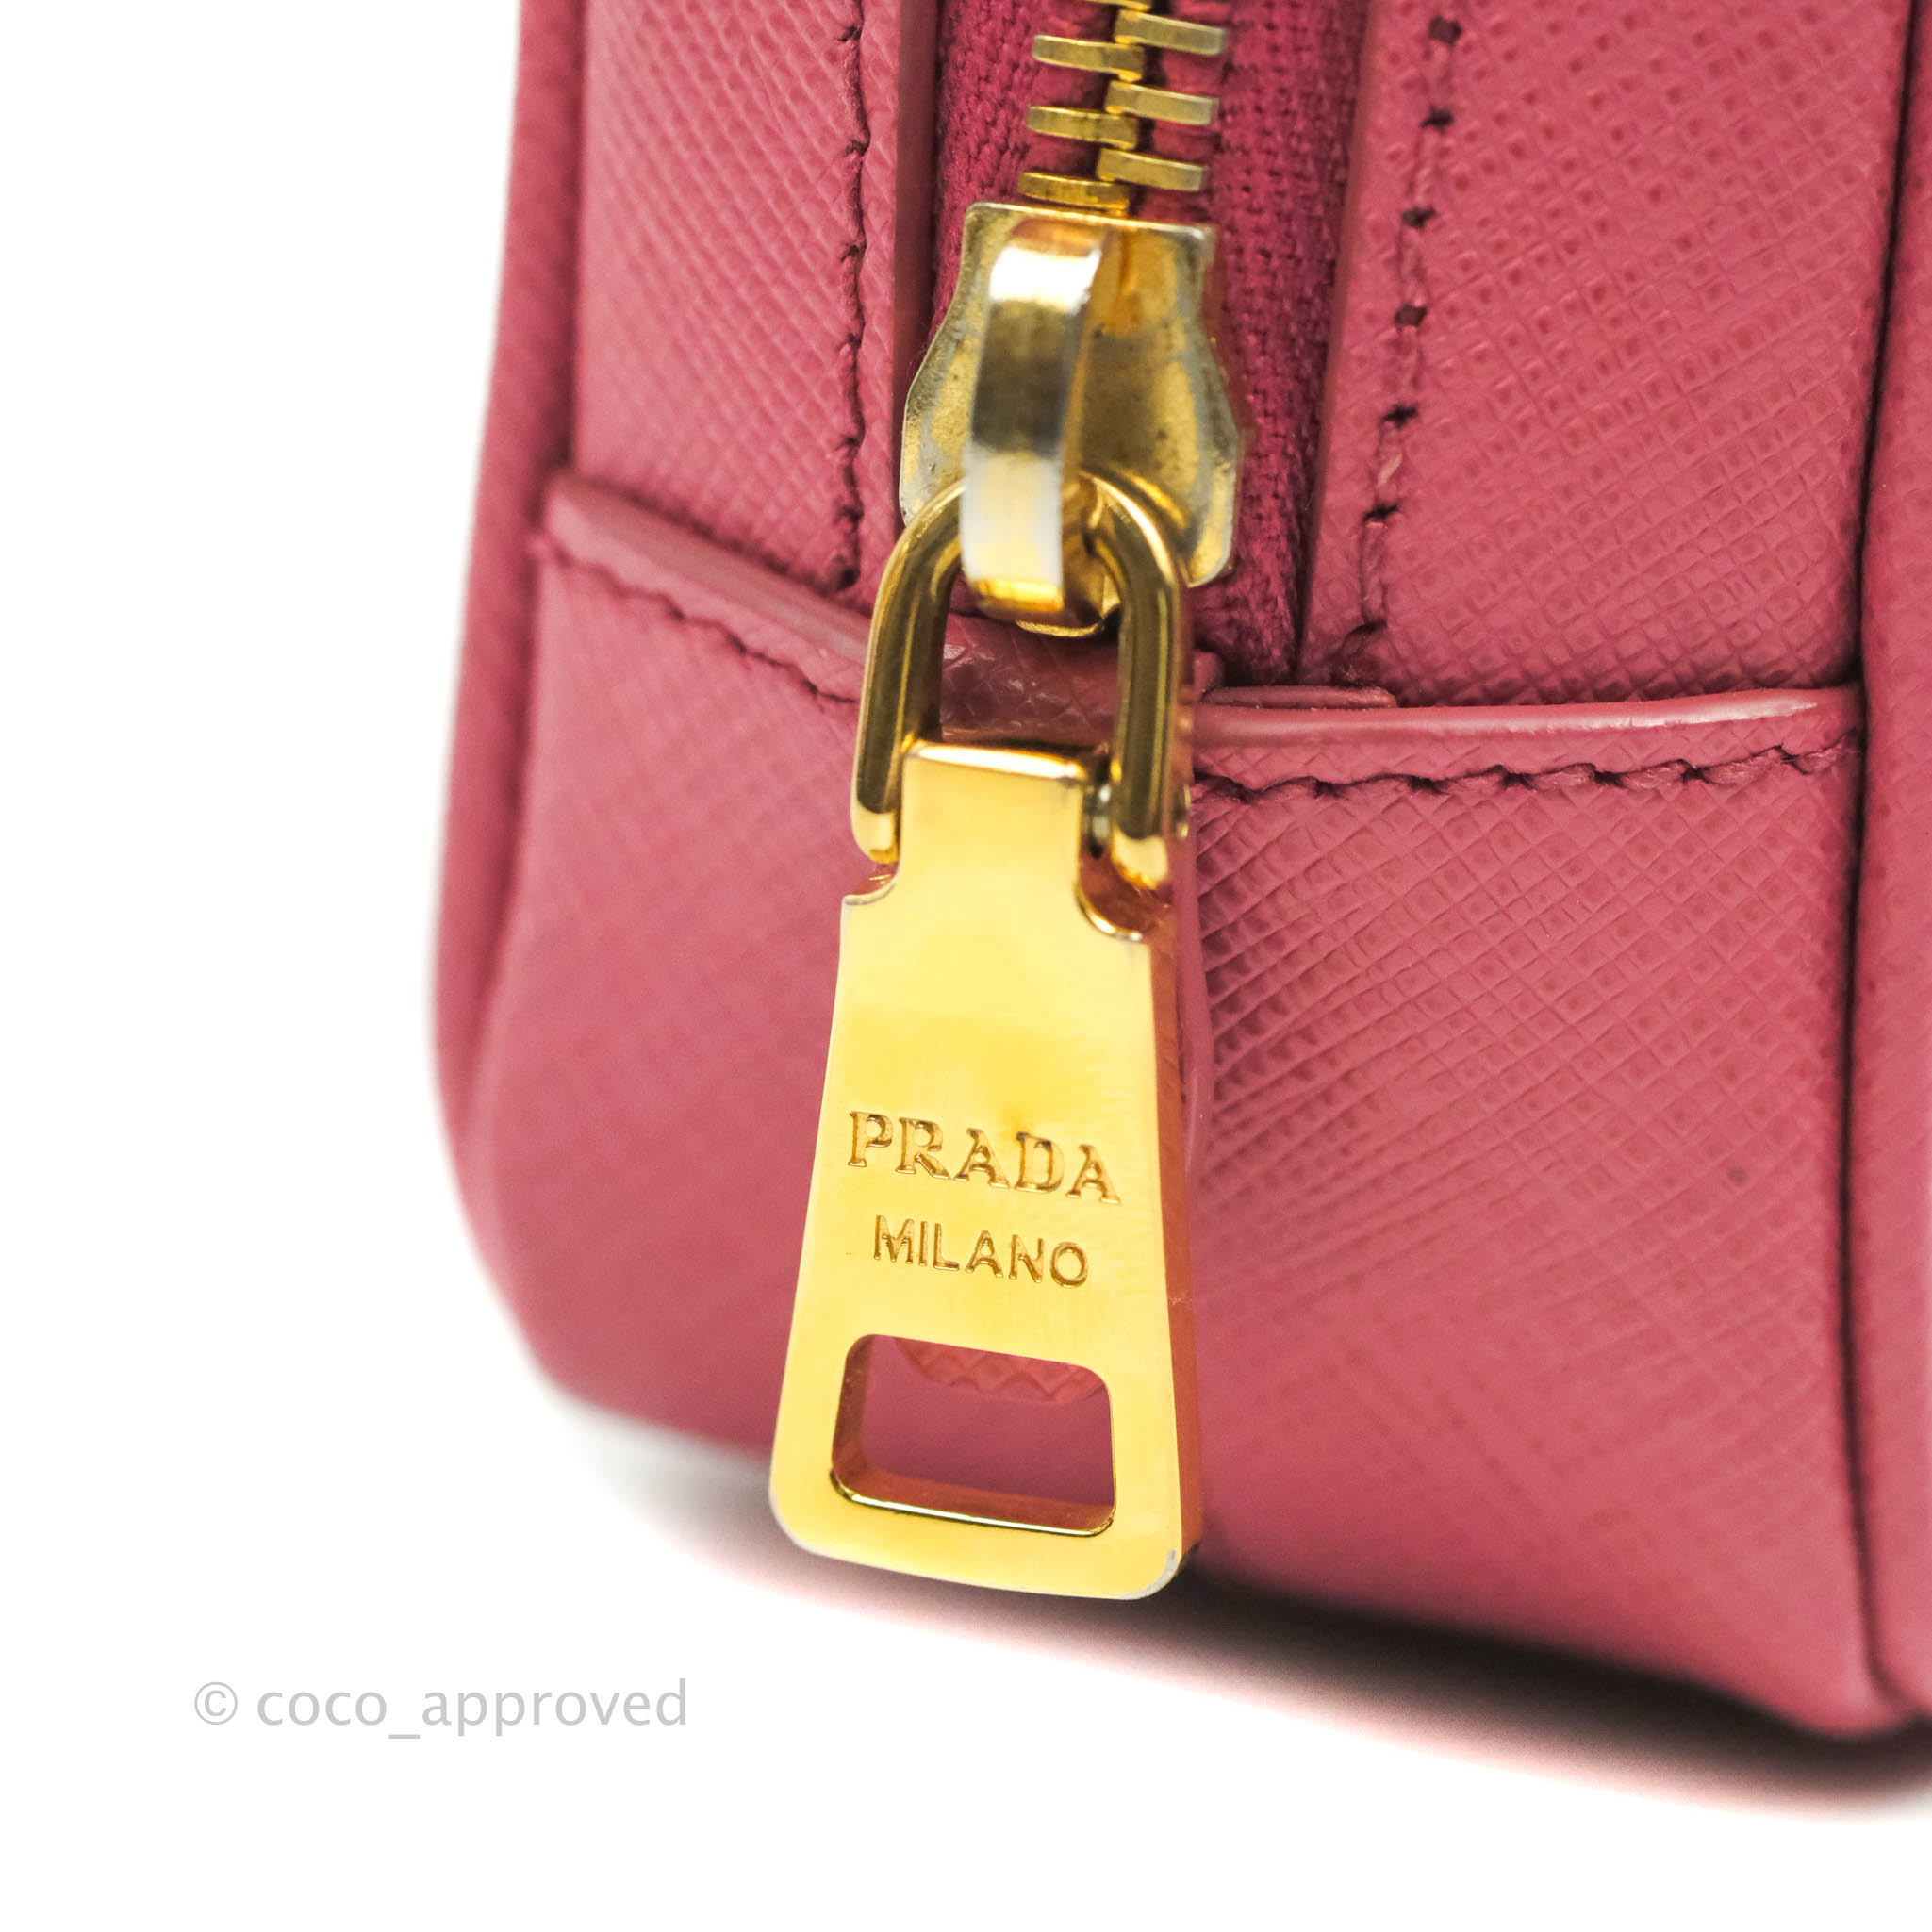 Prada Saffiano Camera Crossbody Red in Saffiano Leather with Gold-tone - US